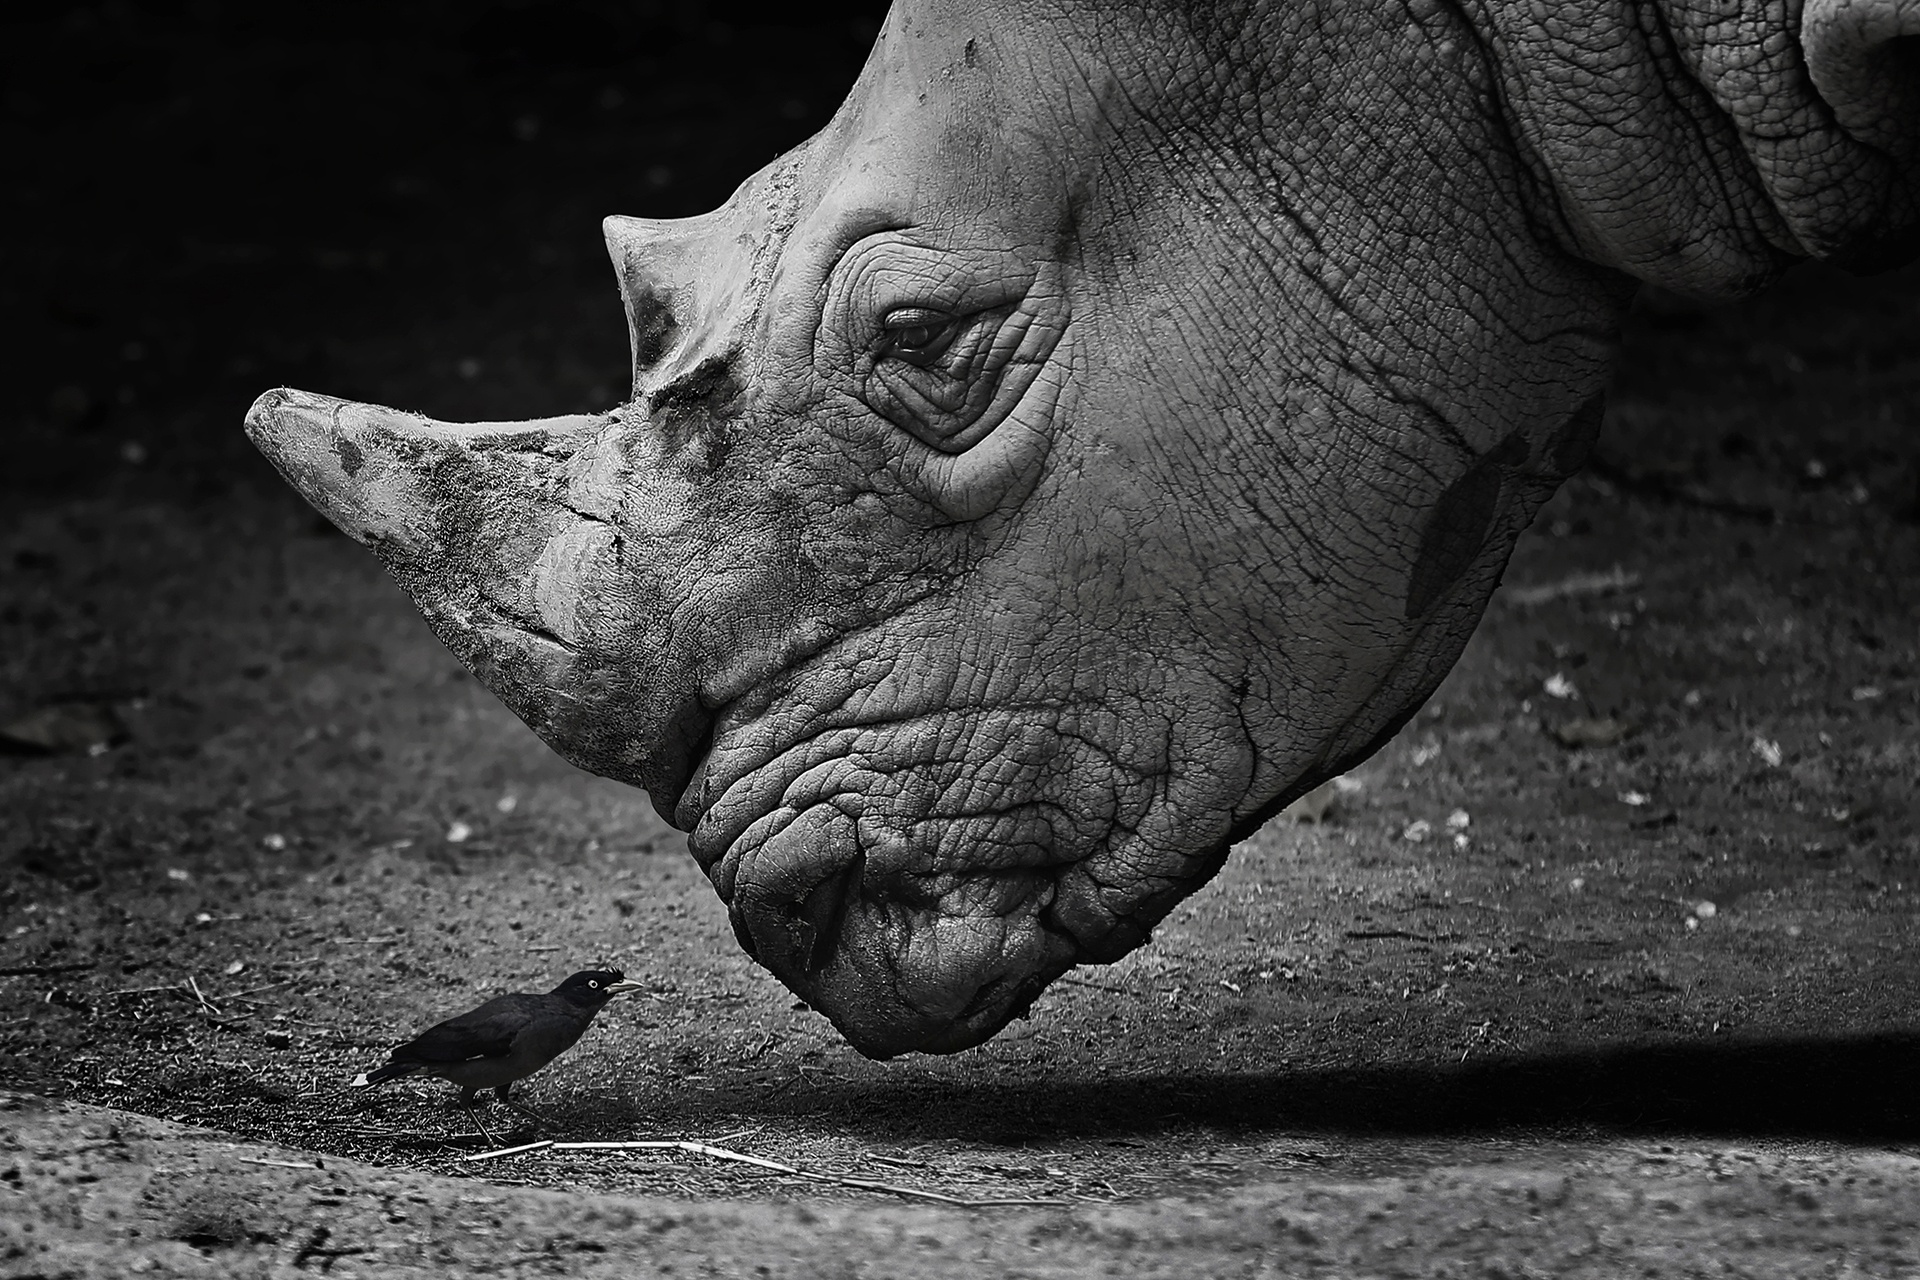 rhinoceros, rhino, animal, bird, black & white, close up